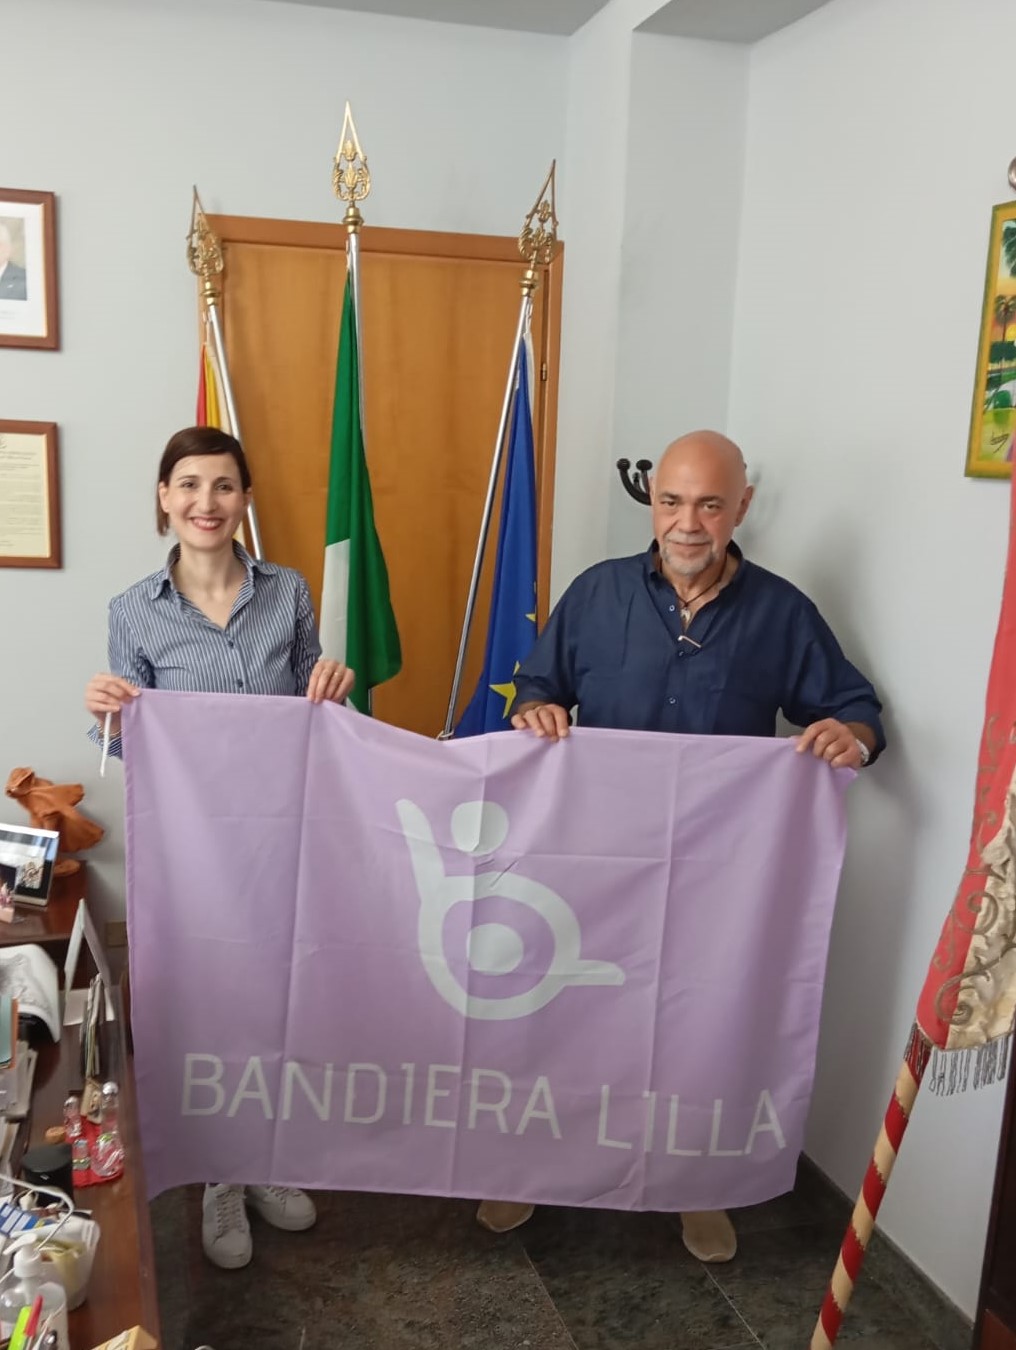 Il Sindaco e il presidente di Bandiera Lilla posano con la Bandiera